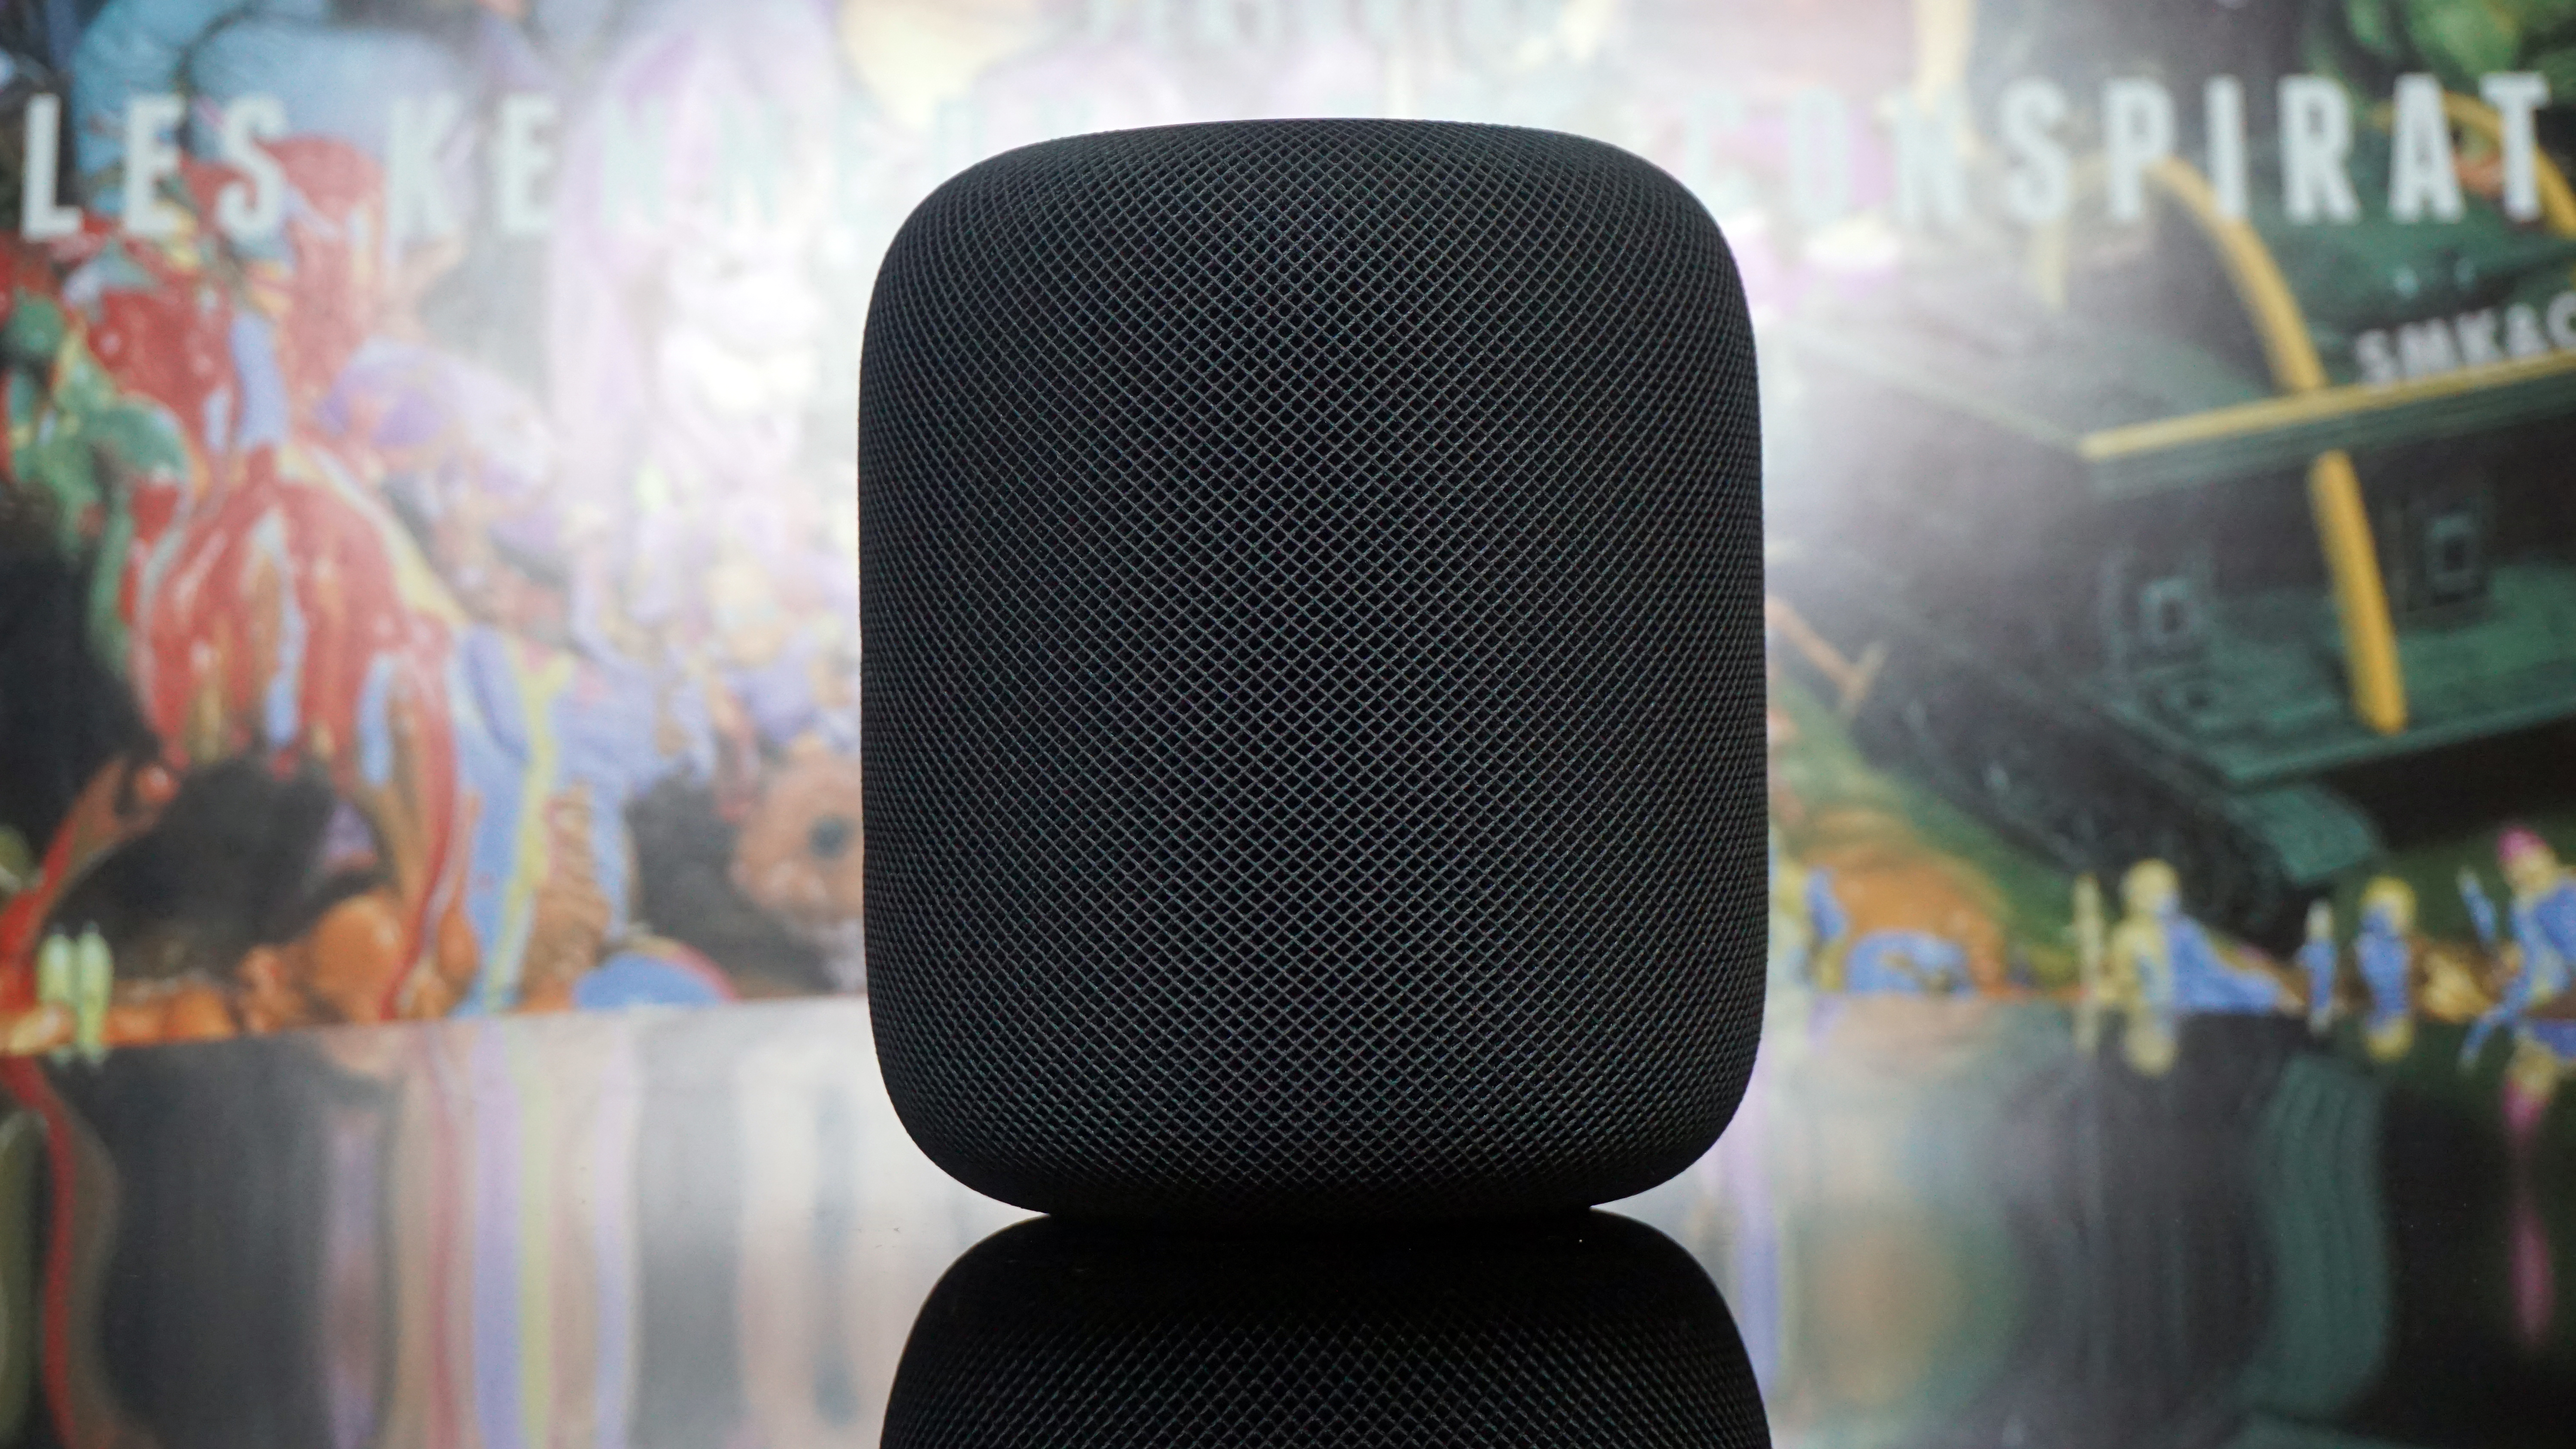 Best AirPlay speaker: Apple HomePod